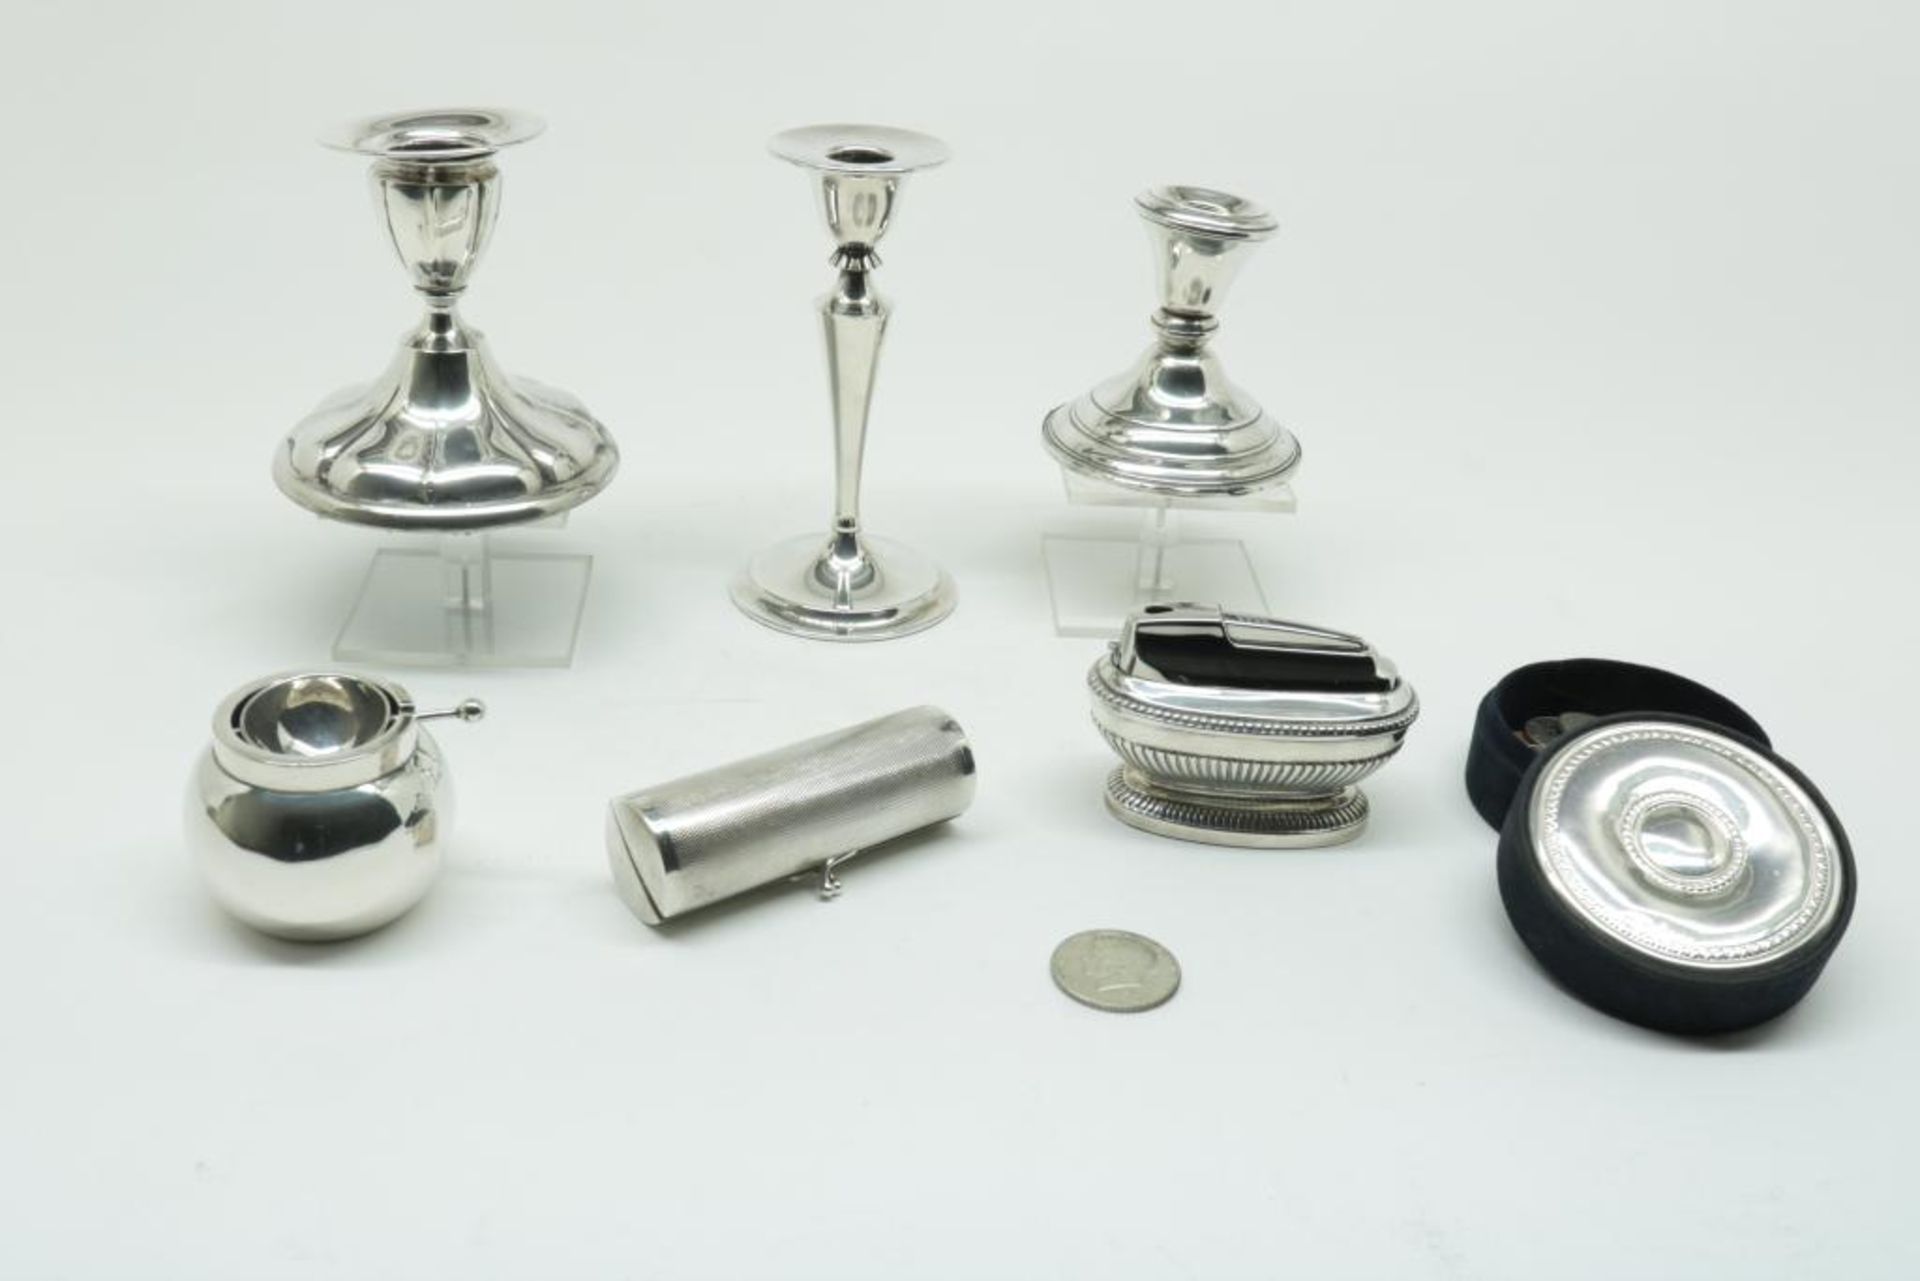 Lot divers zilver, wo 3 kandelaars - Bild 2 aus 2